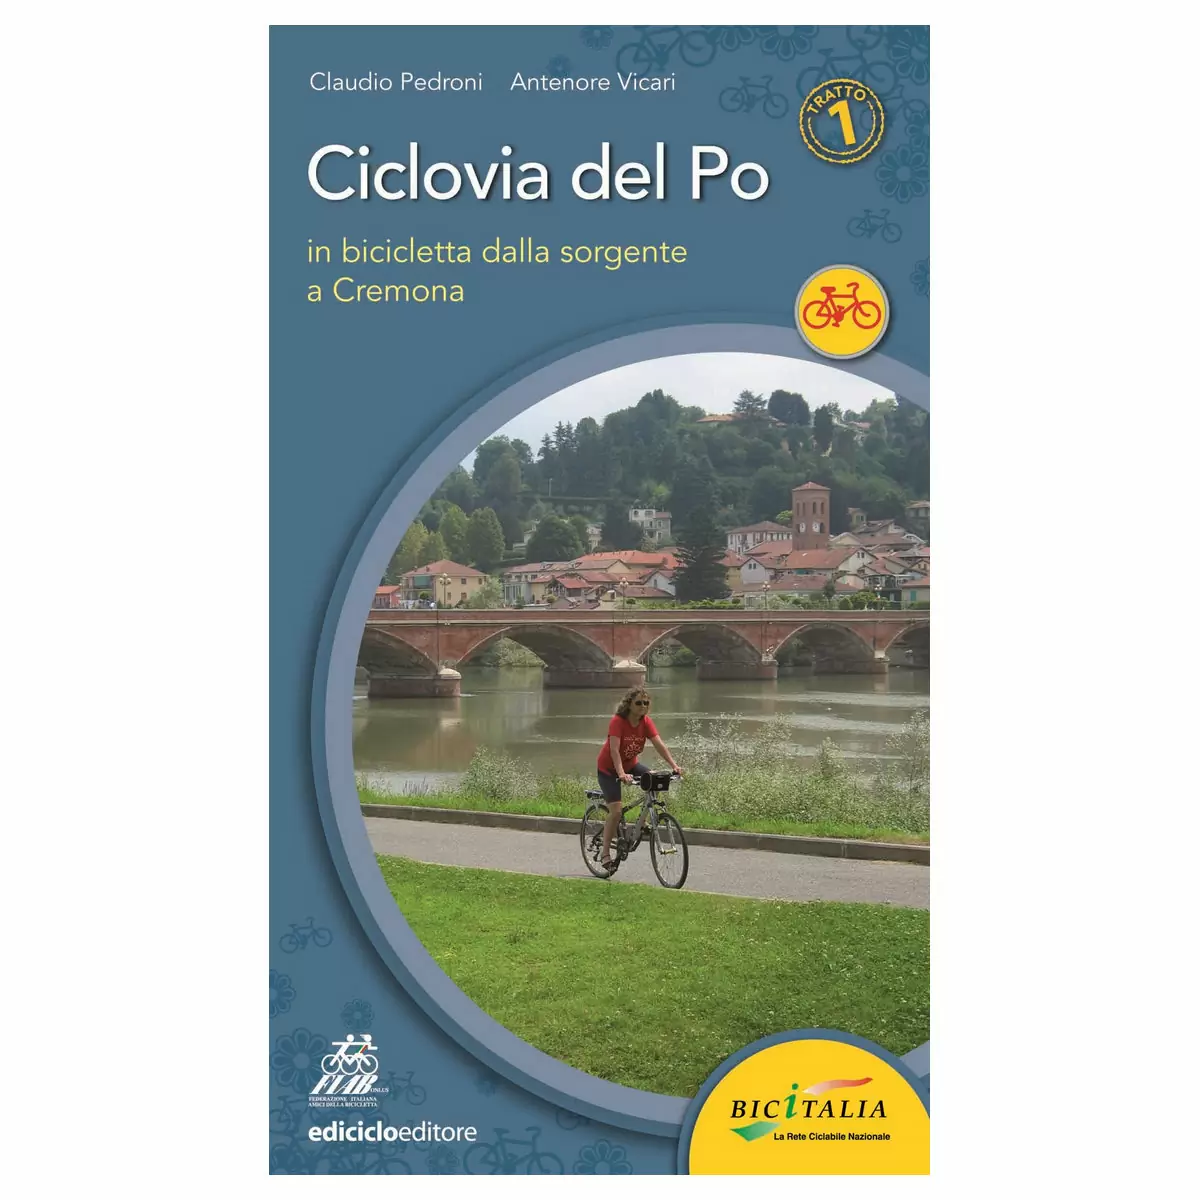 Book Ciclovia del Po tratto 1- Dalla sorgente a Cremona, Pedroni, Vicari - image